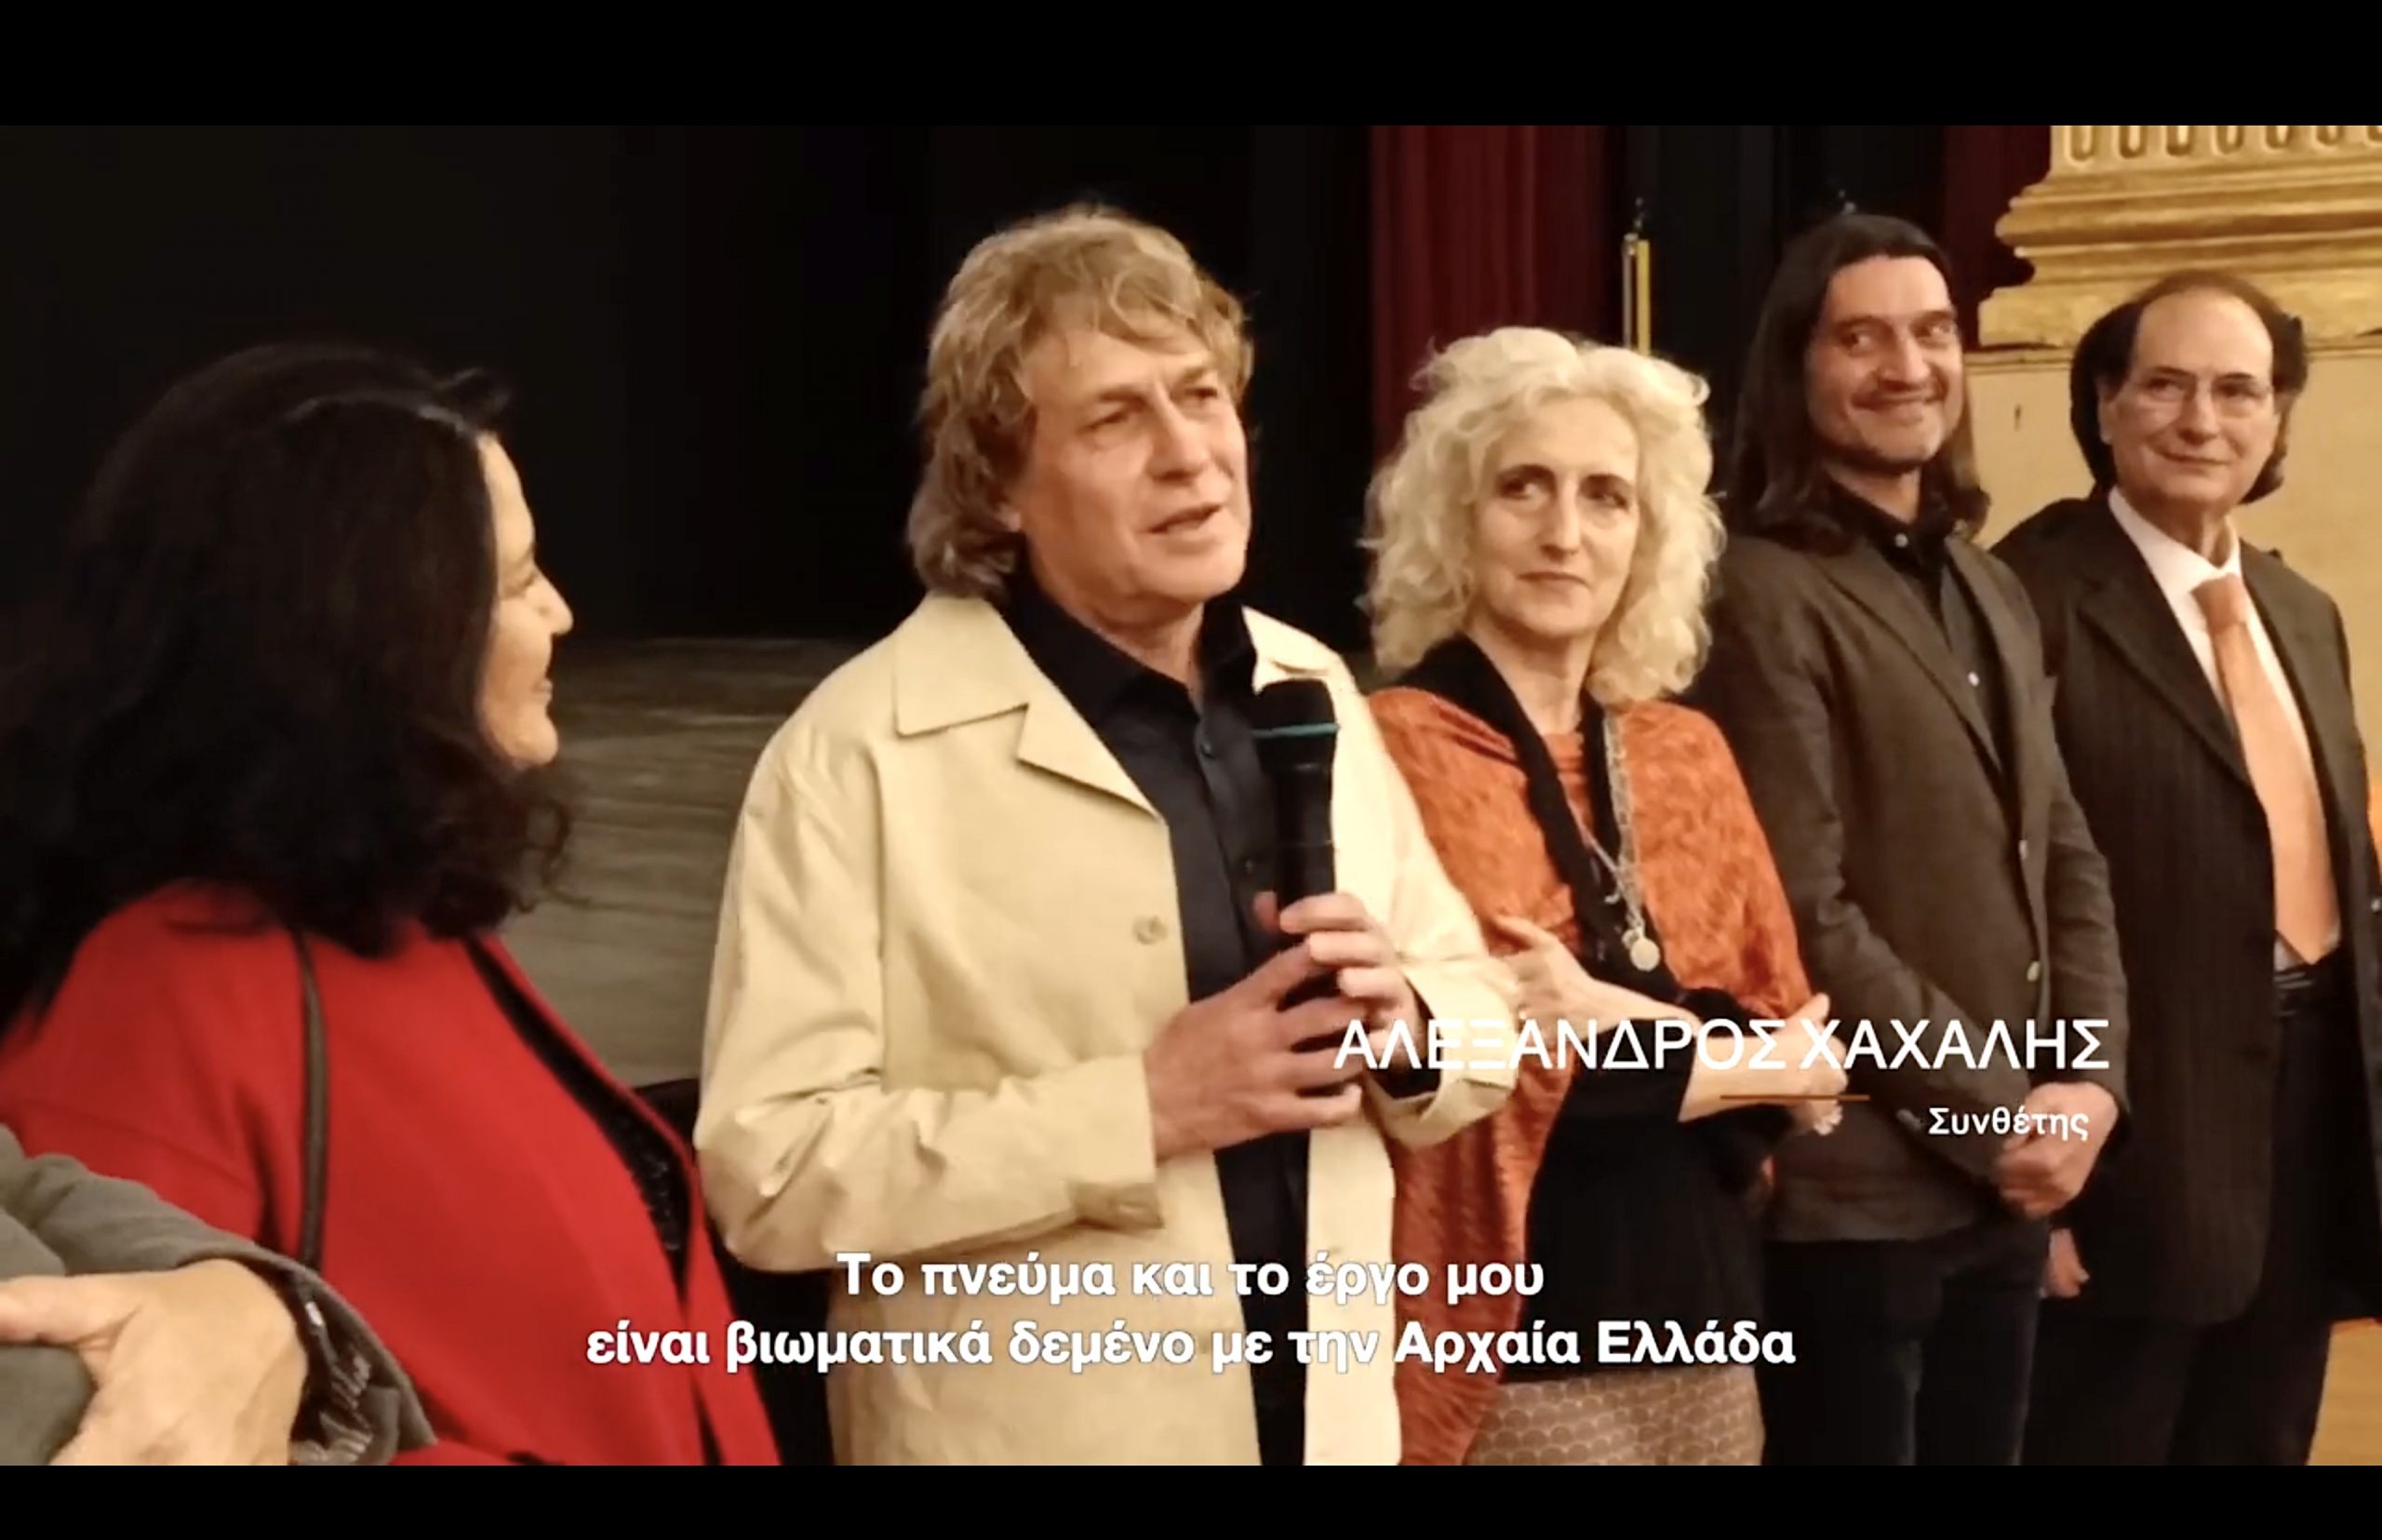 Θριαμβευτική εμπειρία για τον Αλέξανδρο Χάχαλη στην πρεμιέρα της ταινίας KALAVRIA στο Μπάρι της Μεγάλης Ελλάδας